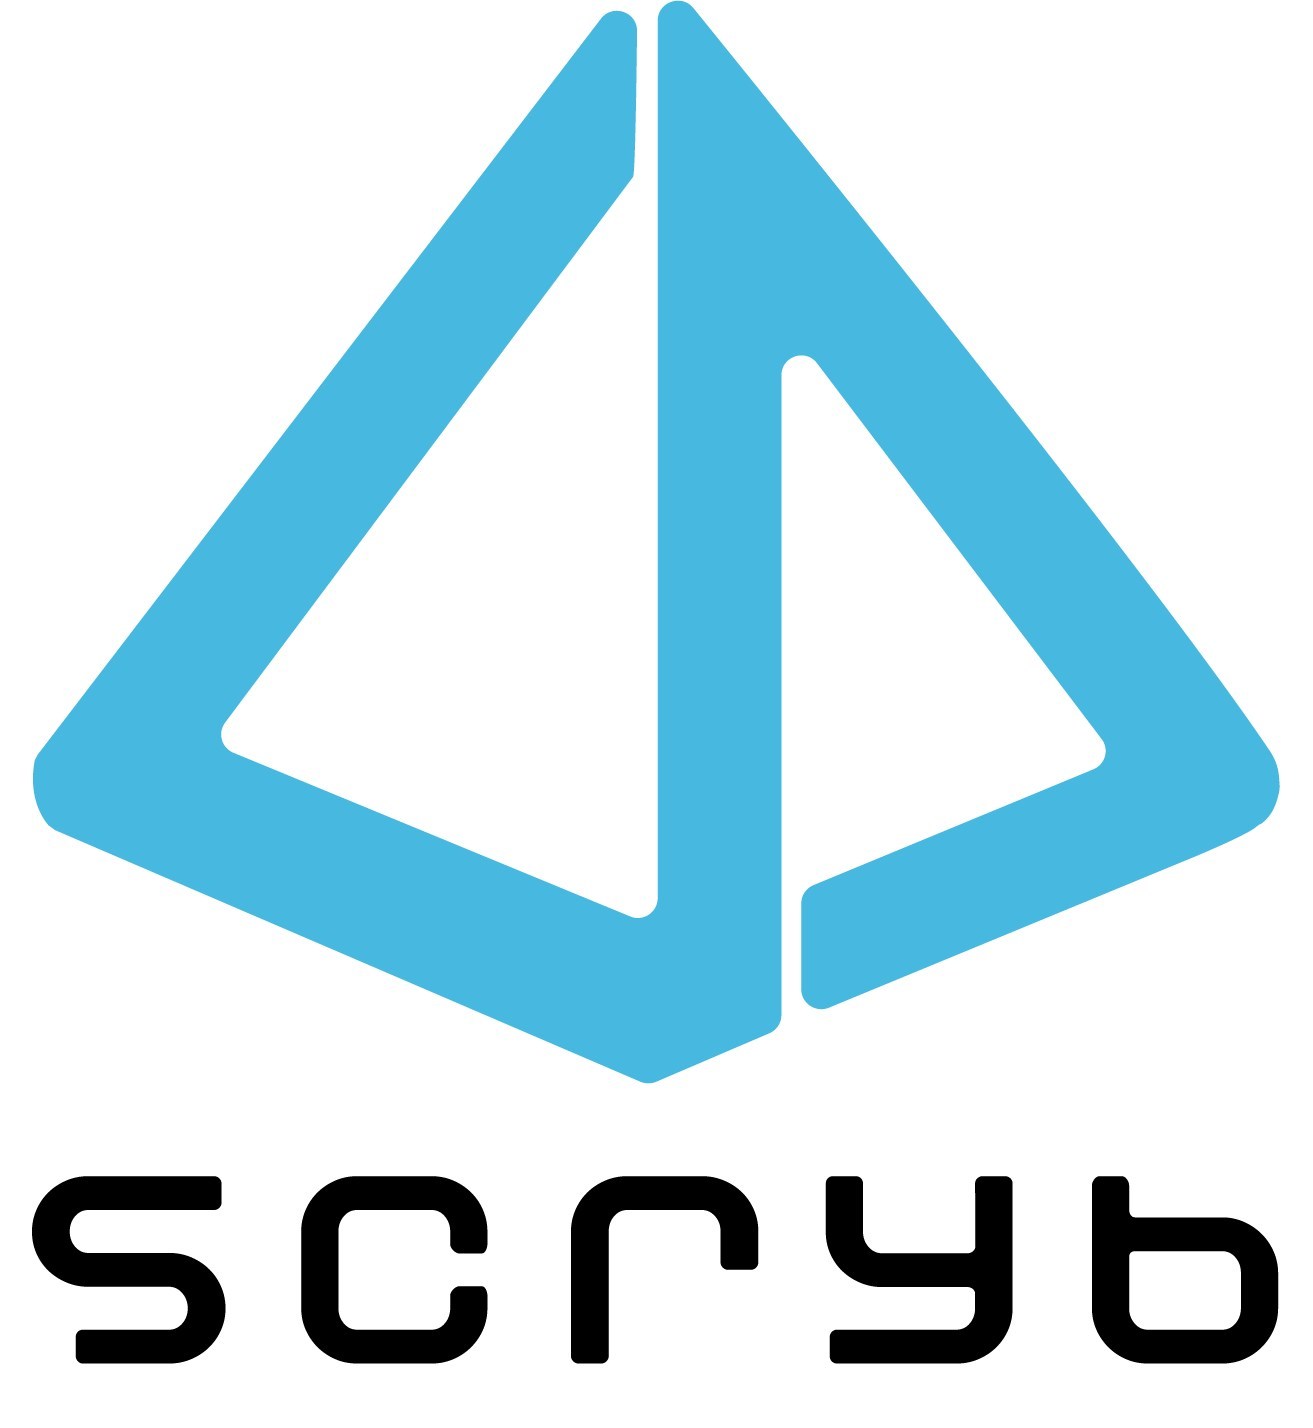 Scryb Inc. (CNW Group/Scryb Inc.)